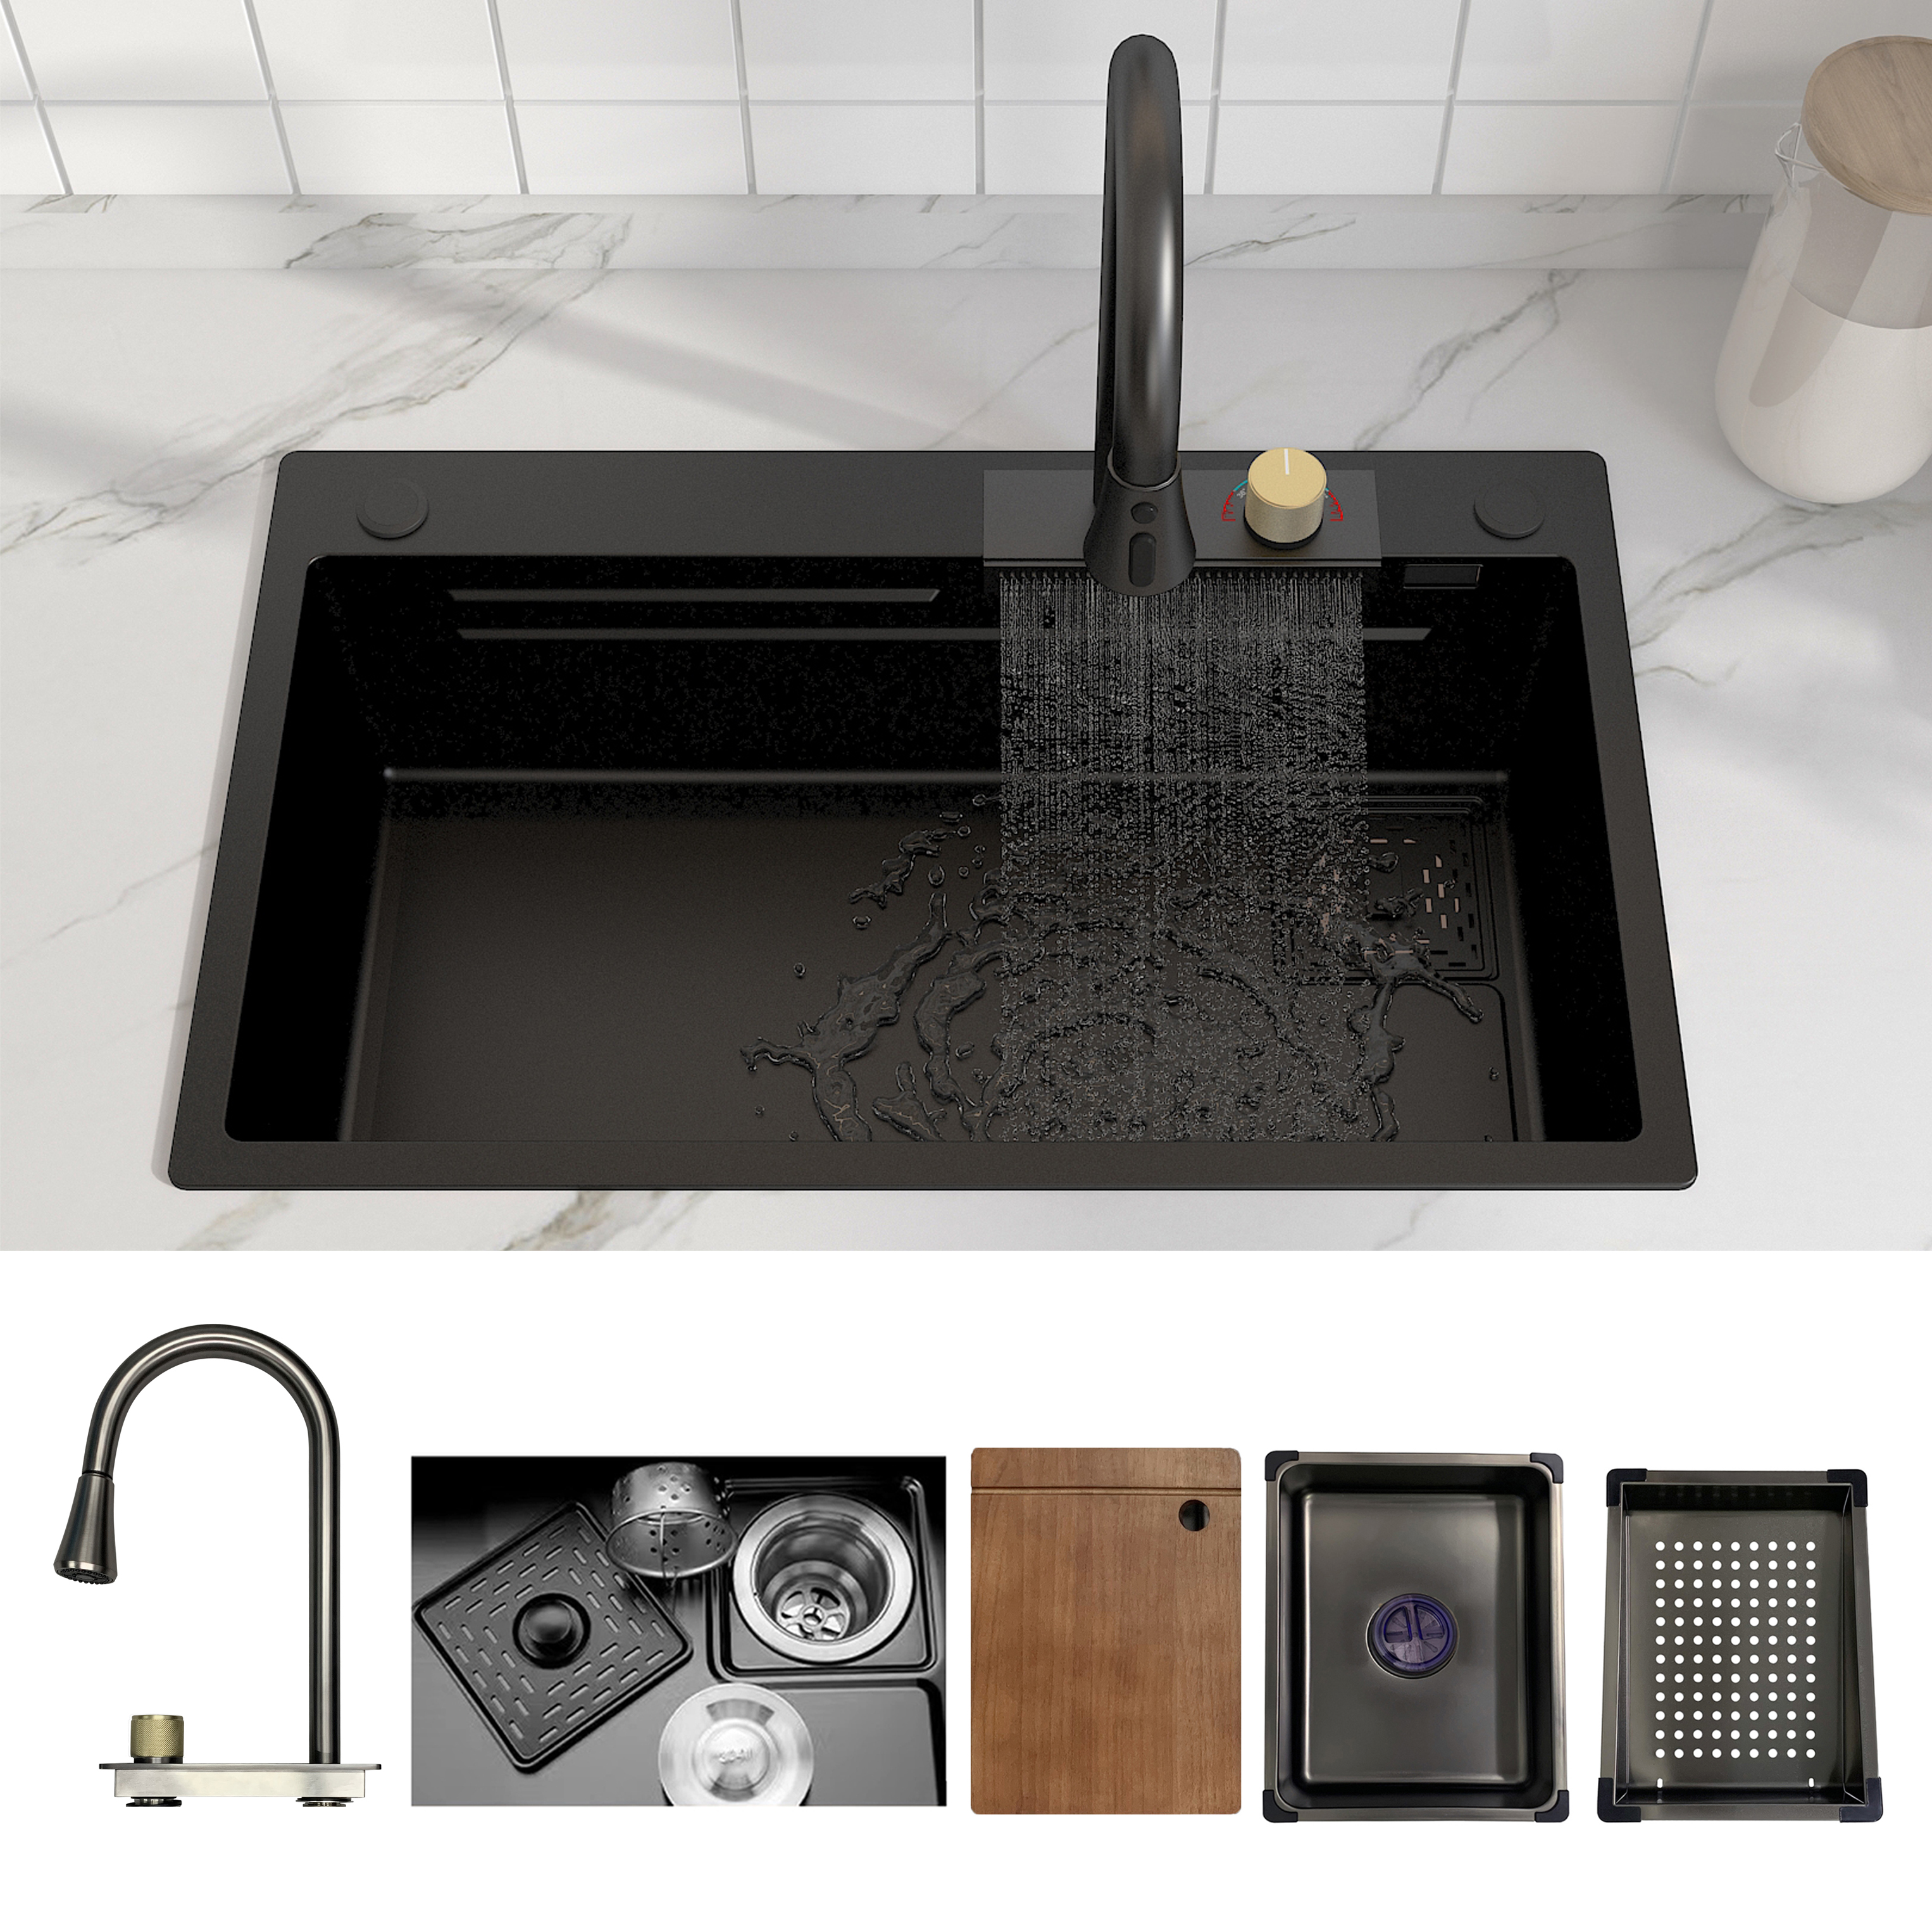 MEJE Fregadero de cocina con estación de trabajo en cascada de 30 × 18 pulgadas, un solo tazón de acero inoxidable, juego de grifo abatible, color negro